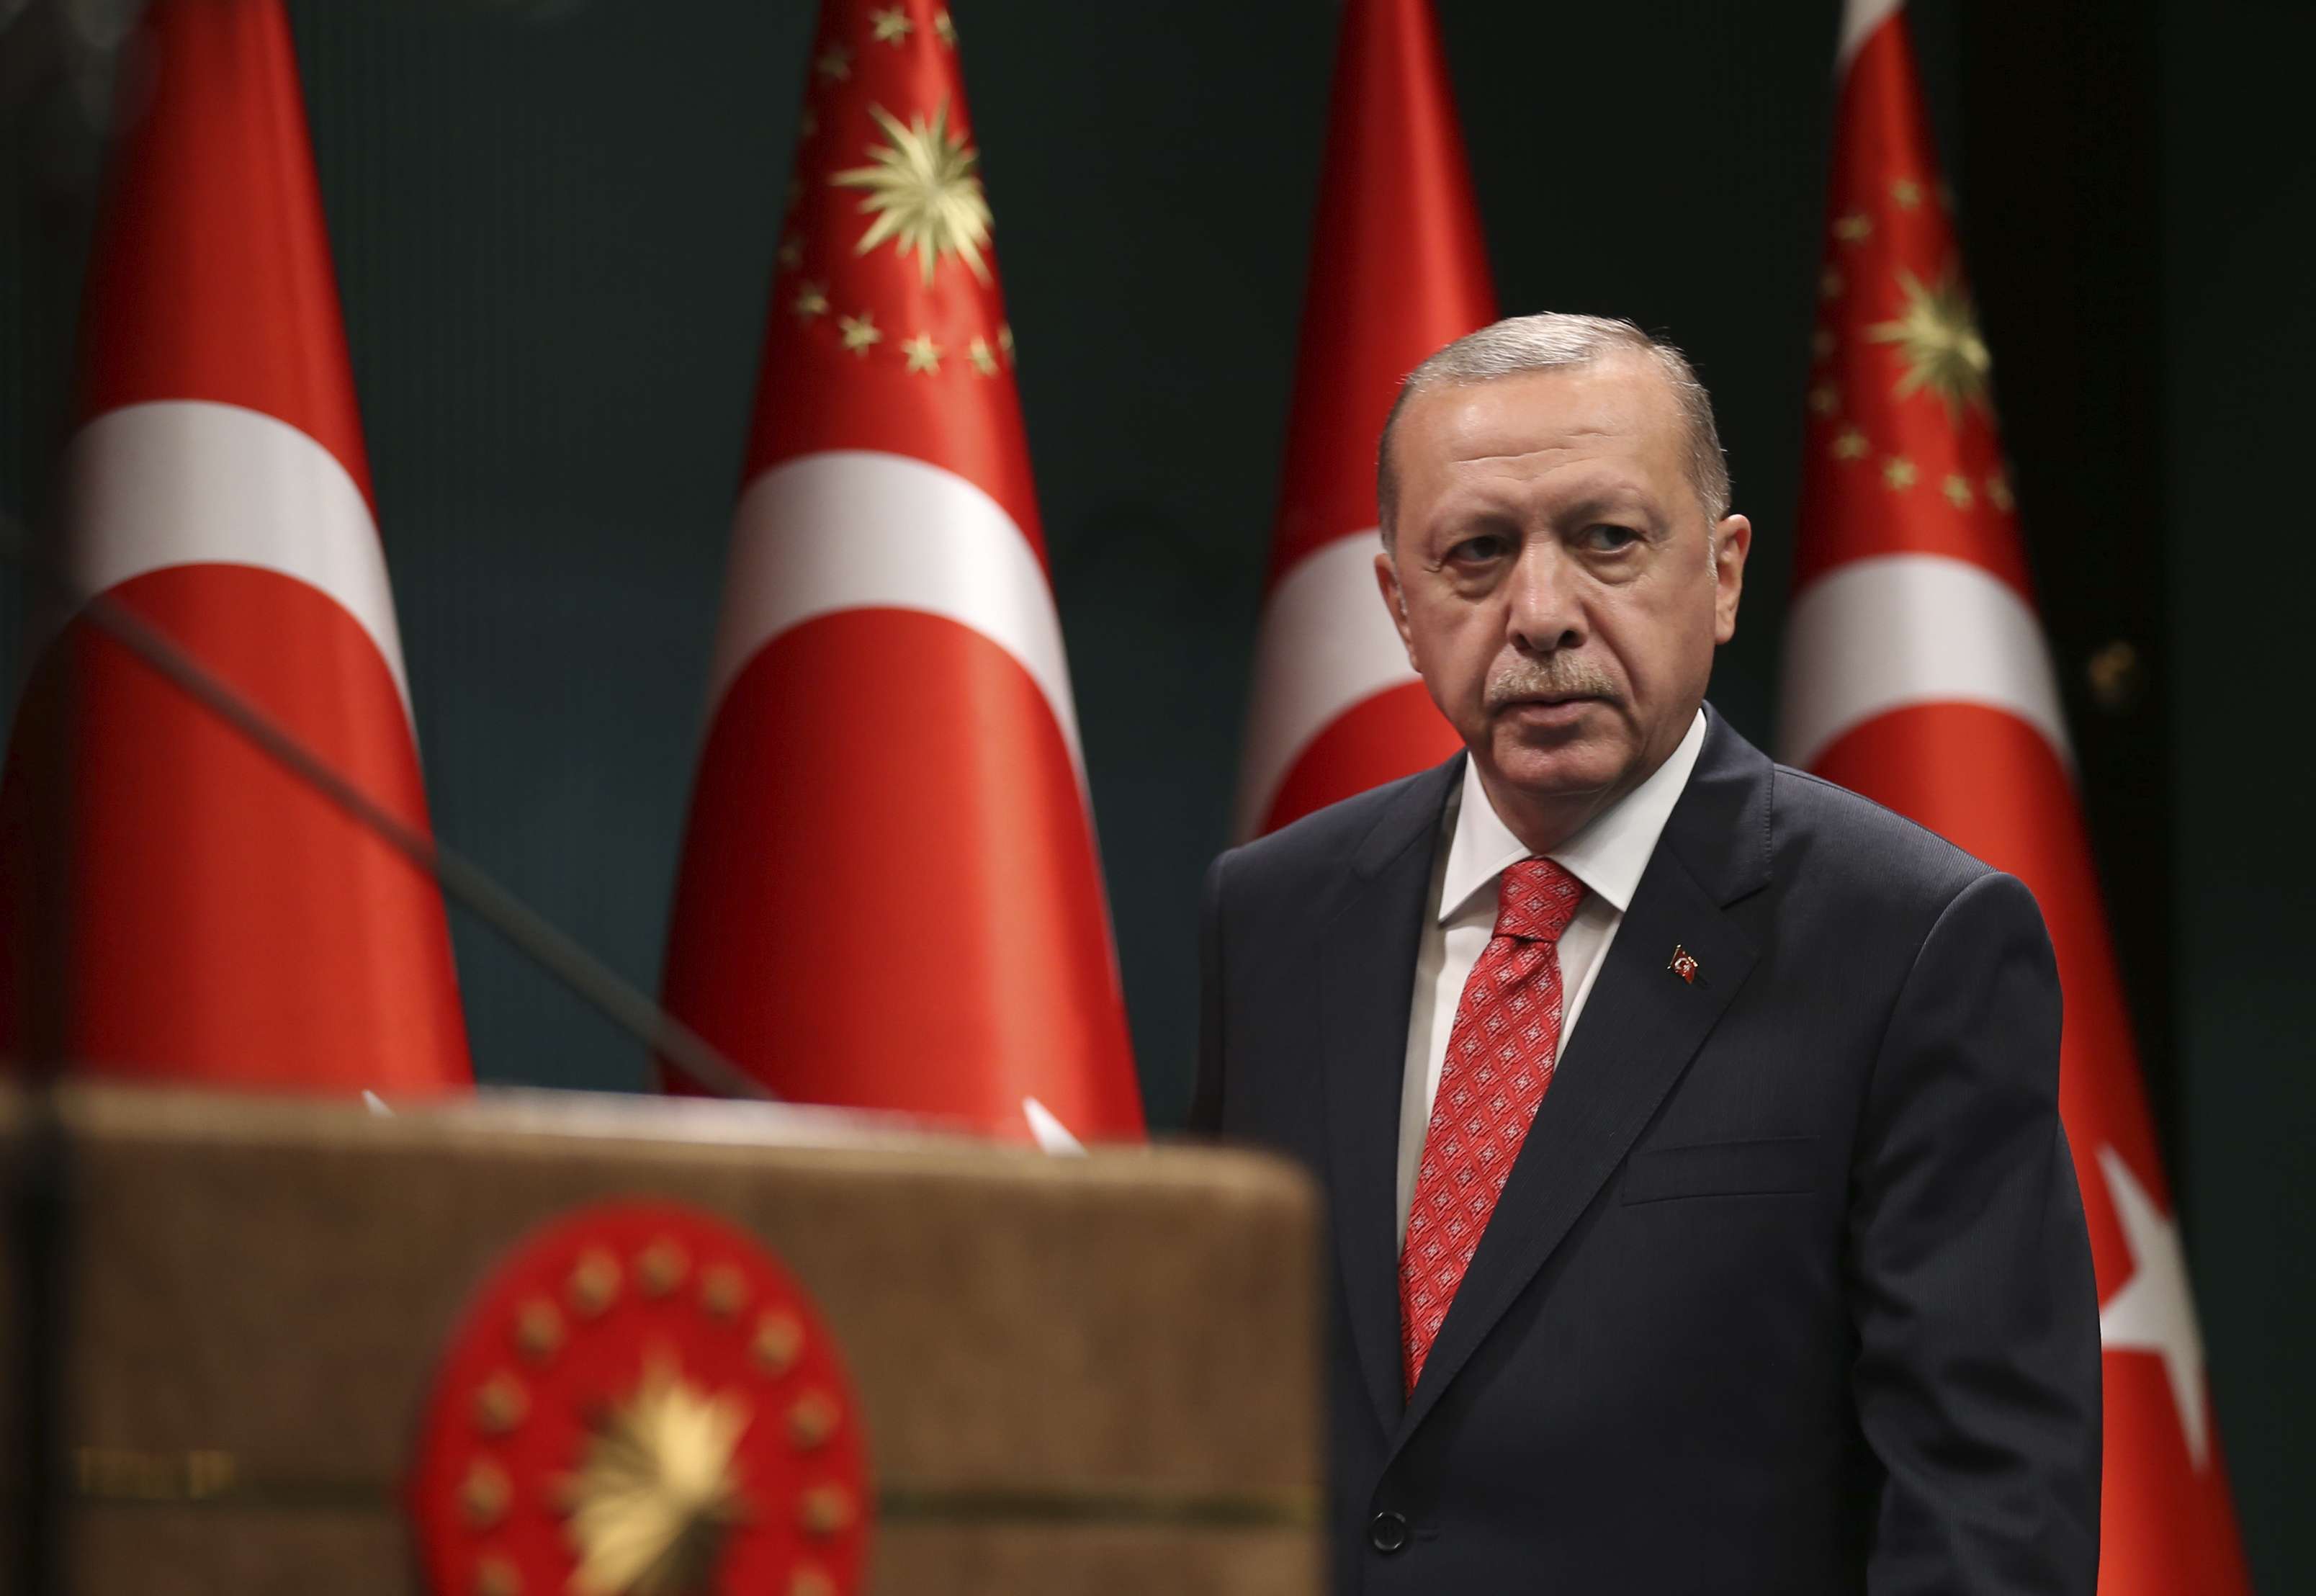 أردوغان ذهب في التصعيد إلى حد الدفع إلى عسكرة شرق المتوسط ثم 'استكان' فجأة